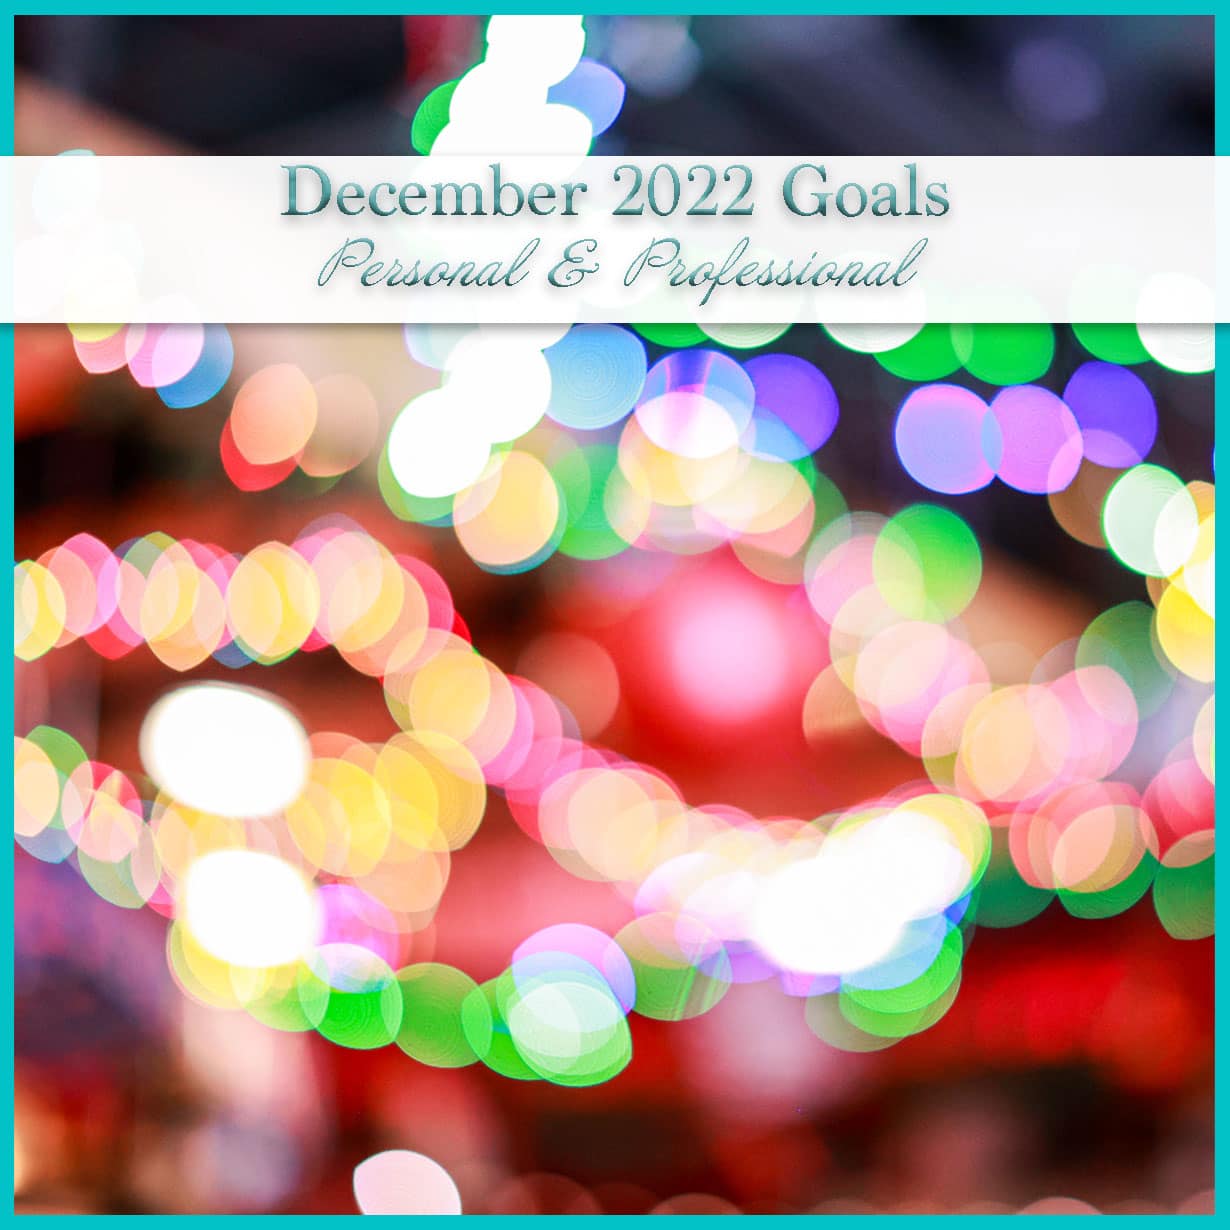 December 2022 Goals